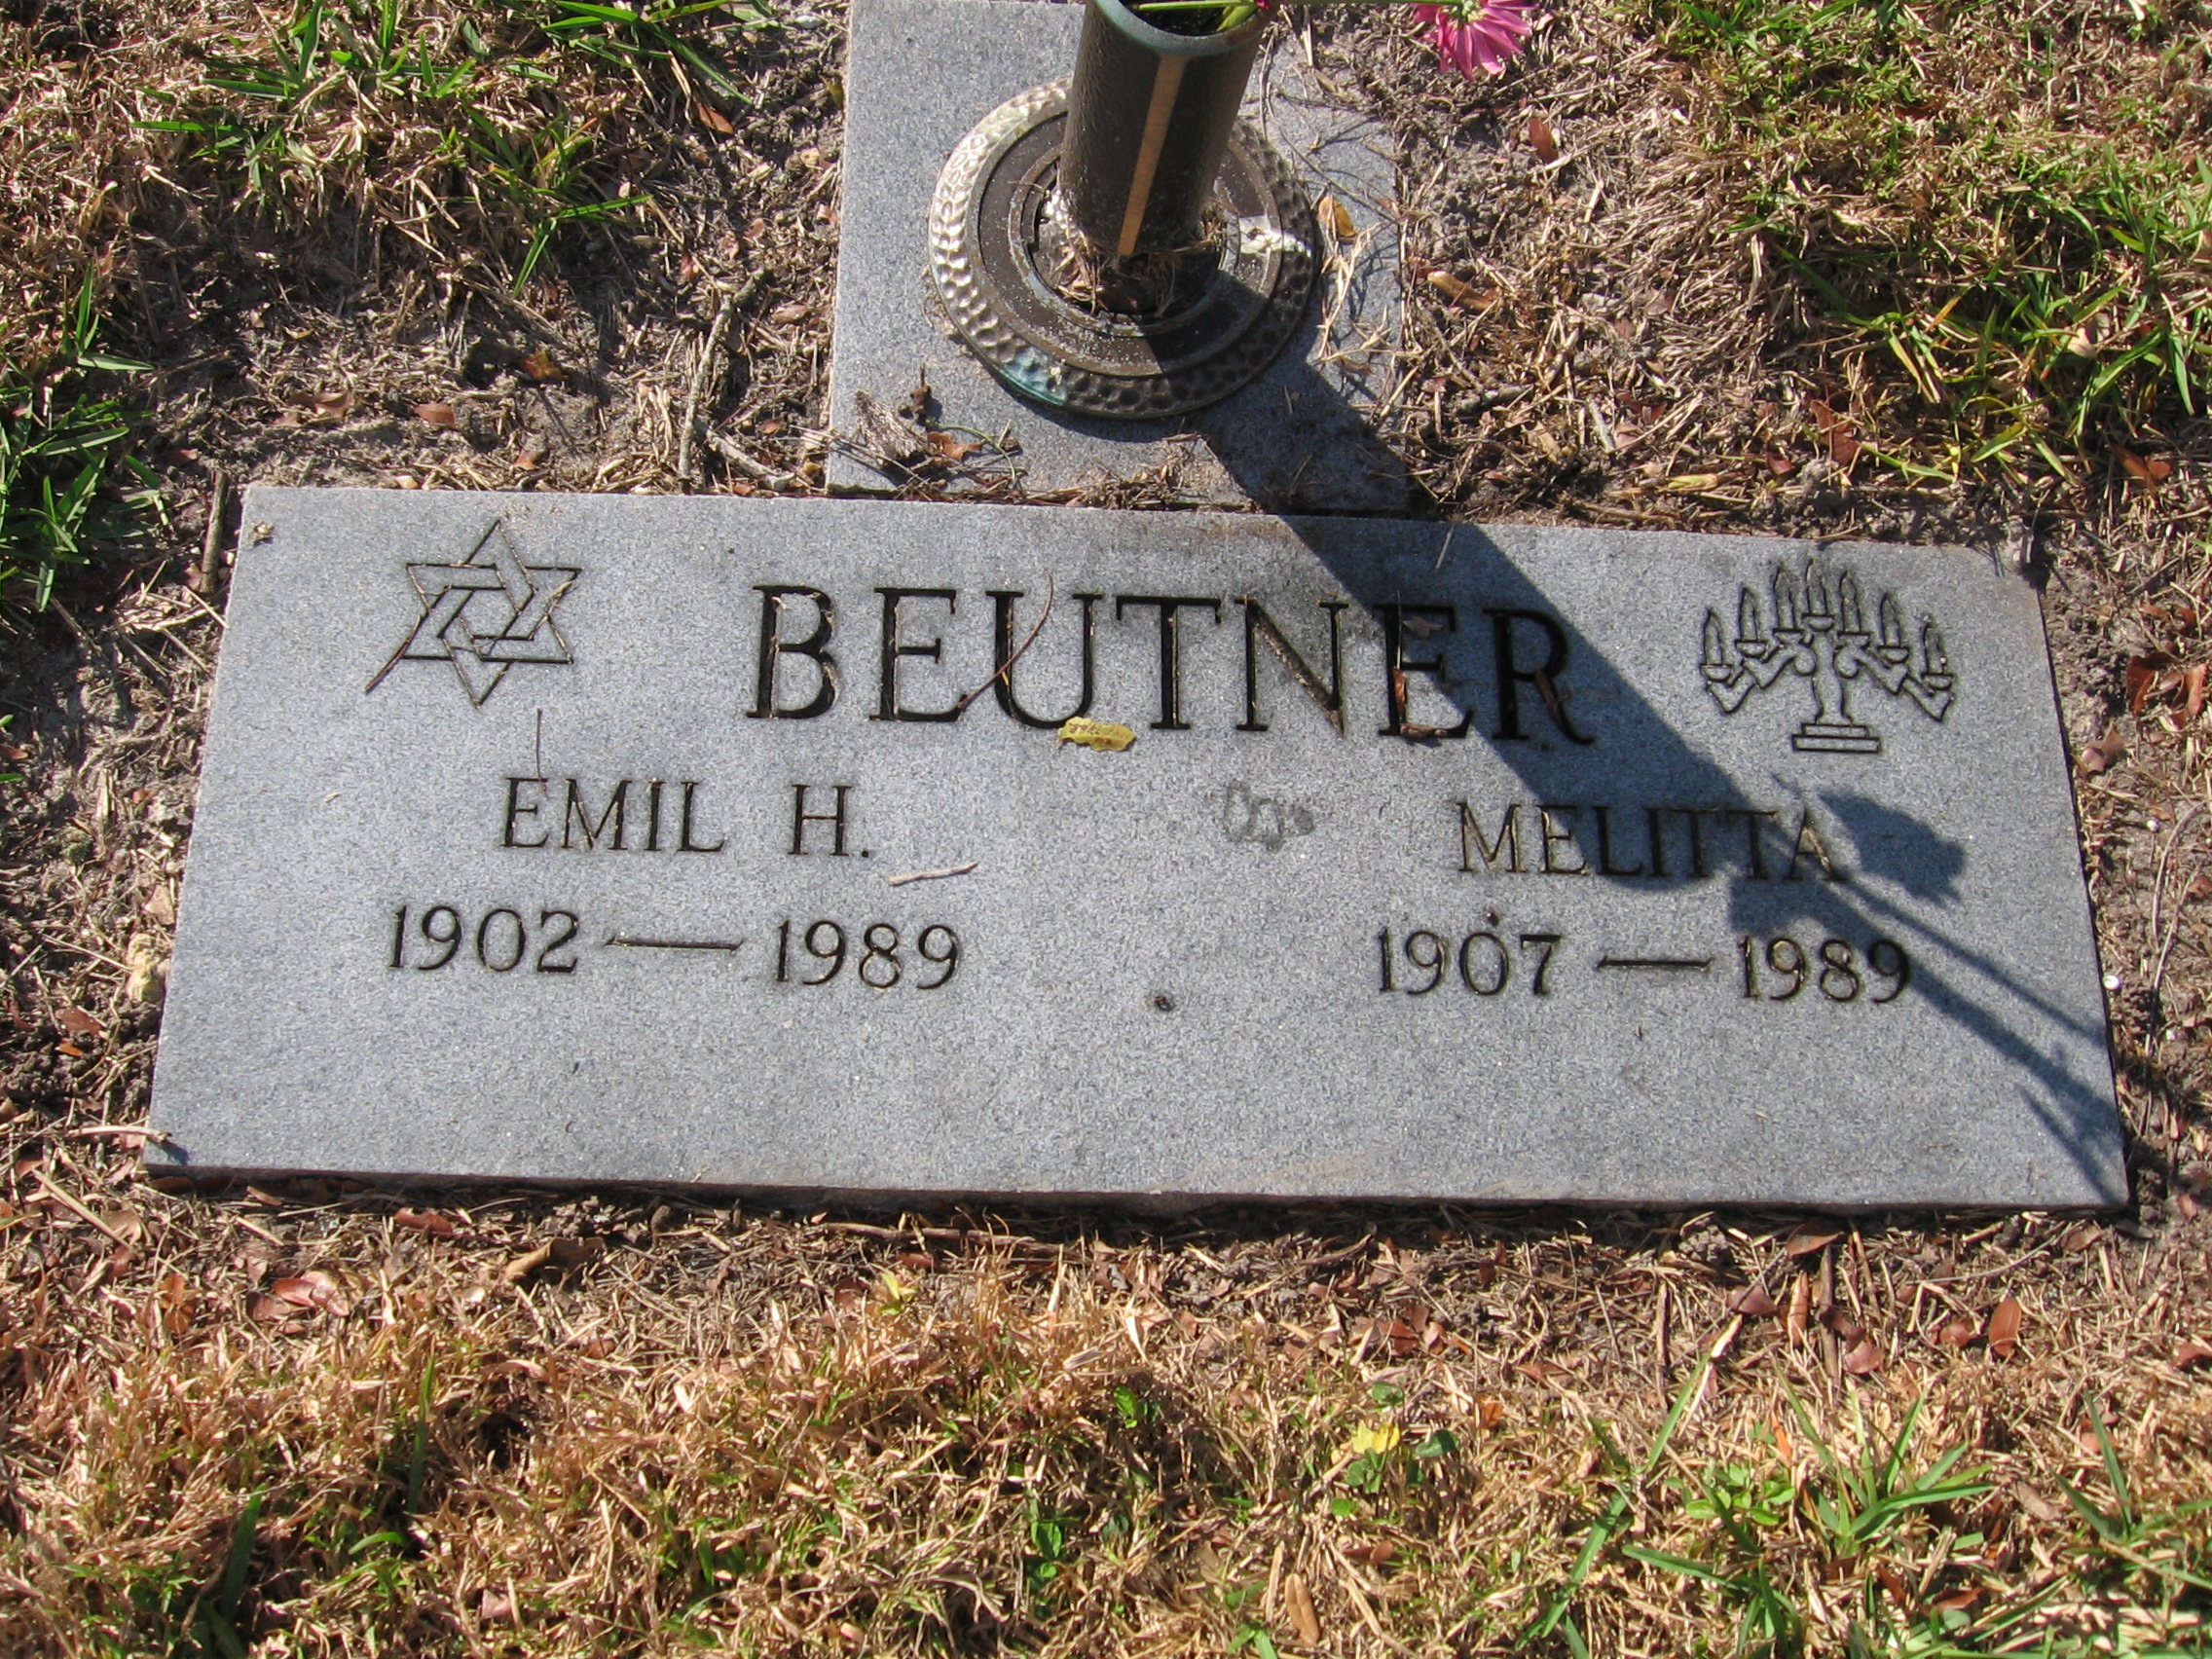 Emil H Beutner